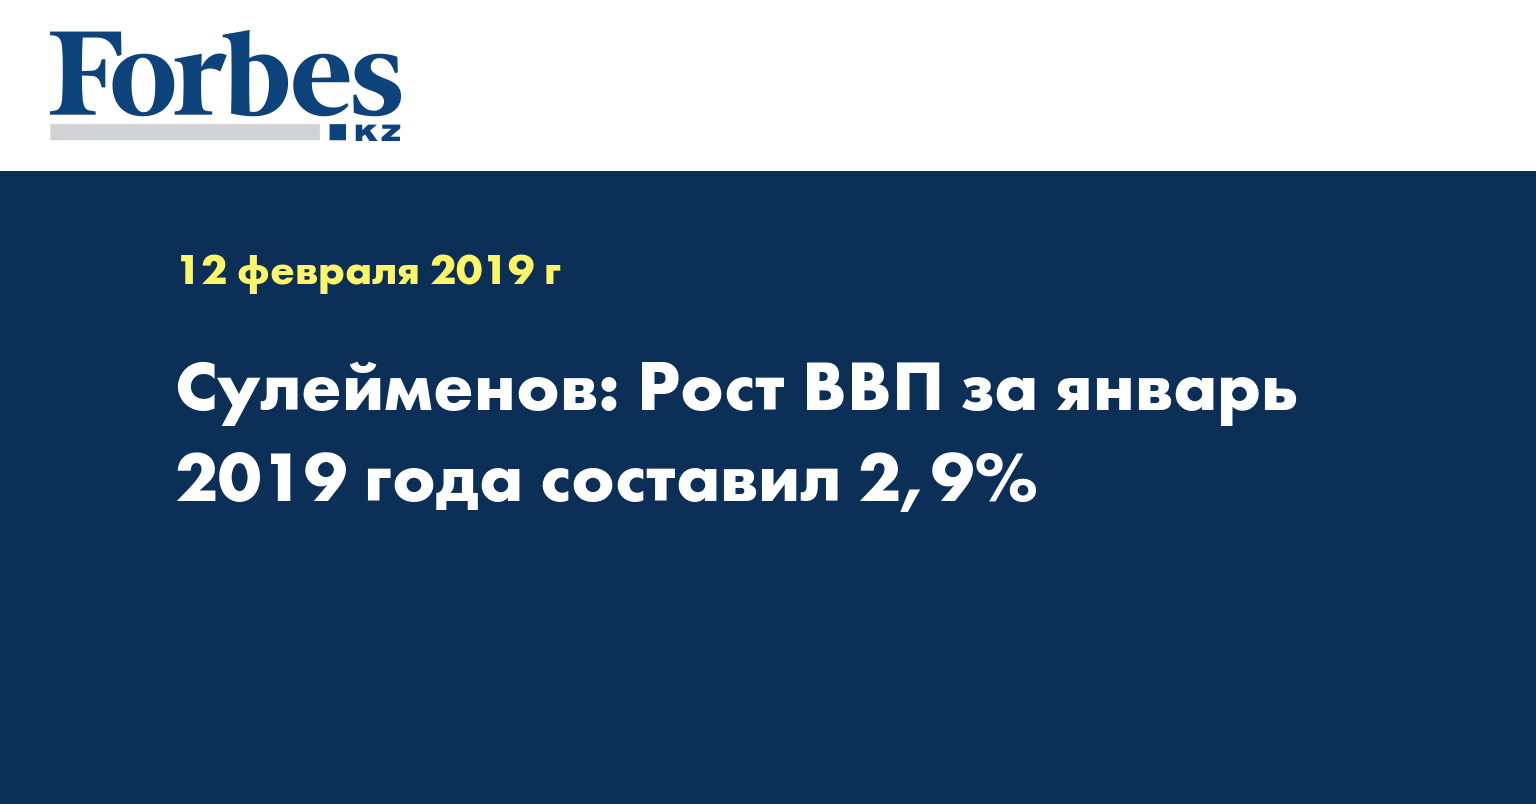 Сулейменов: Рост ВВП за январь 2019 года составил 2,9%